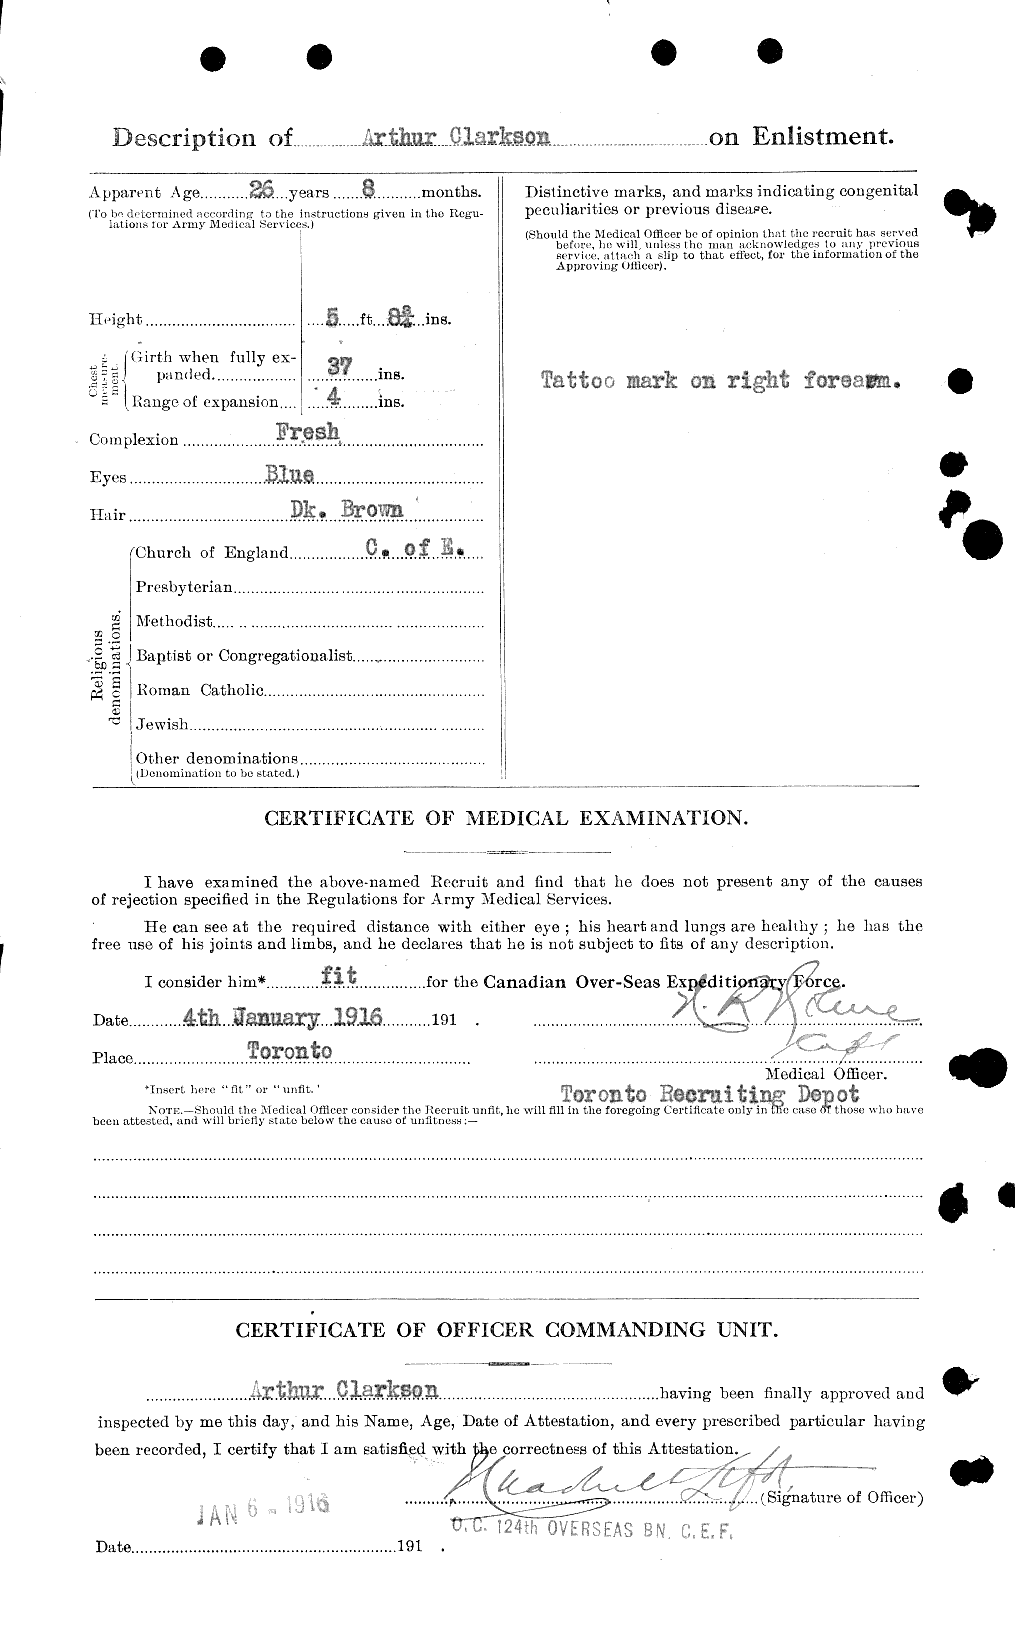 Dossiers du Personnel de la Première Guerre mondiale - CEC 023616b